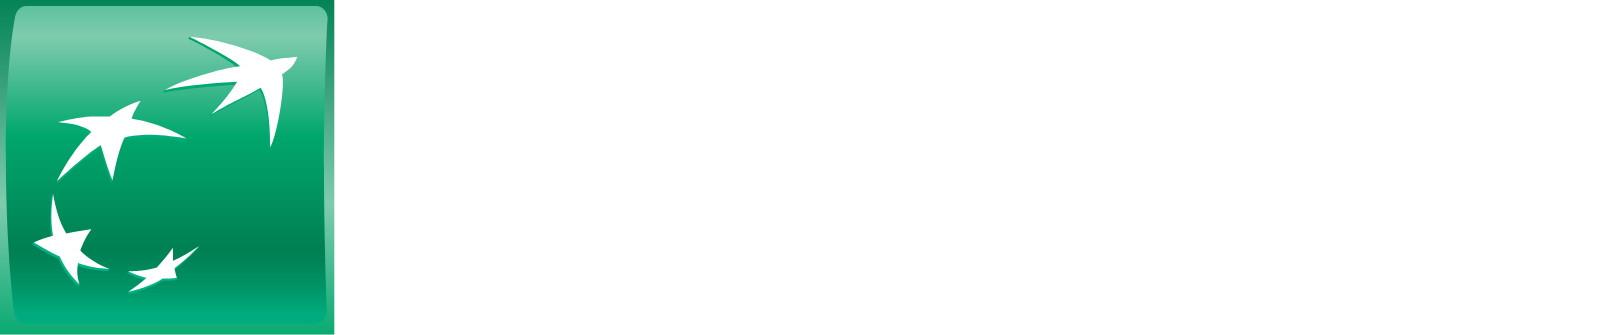 BNP Paribas logo grand pour les fonds sombres (PNG transparent)